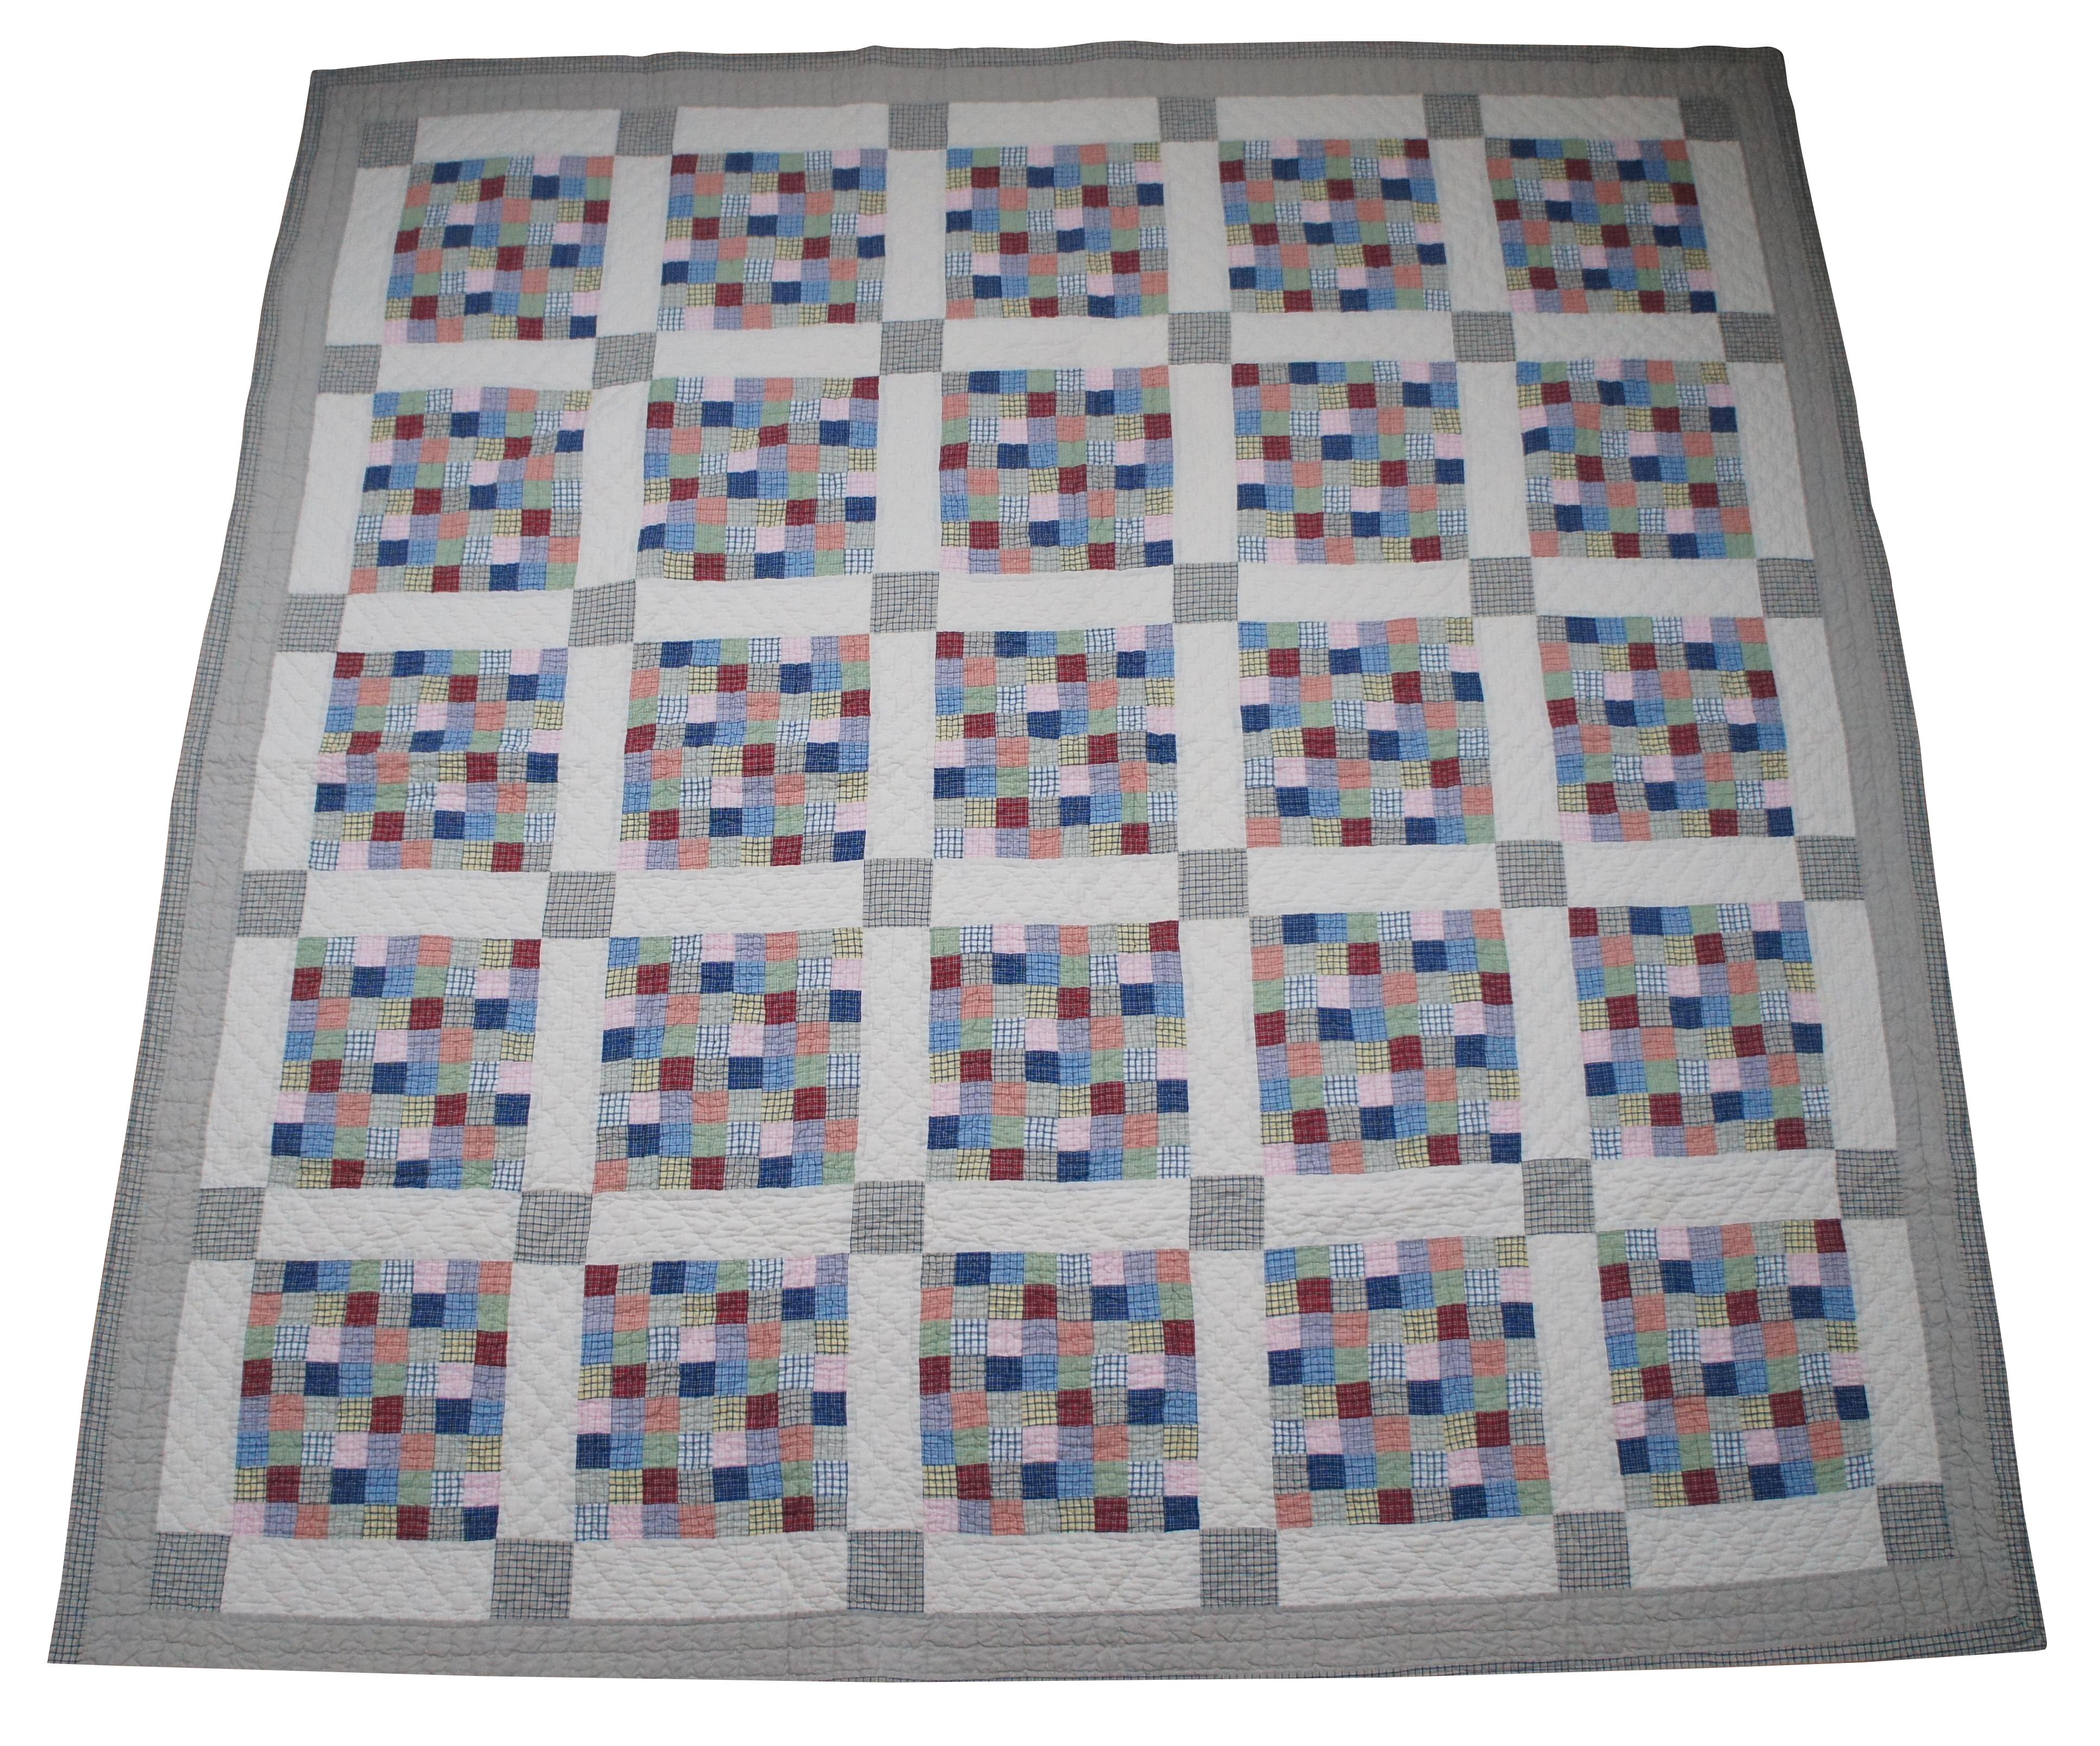 Antike handgestickte Tagesdecke mit geometrischen Blöcken aus buntem Gingham, unterteilt durch weiße und graue Blöcke, mit einer grauen und beigen Bordüre. Maße: 86